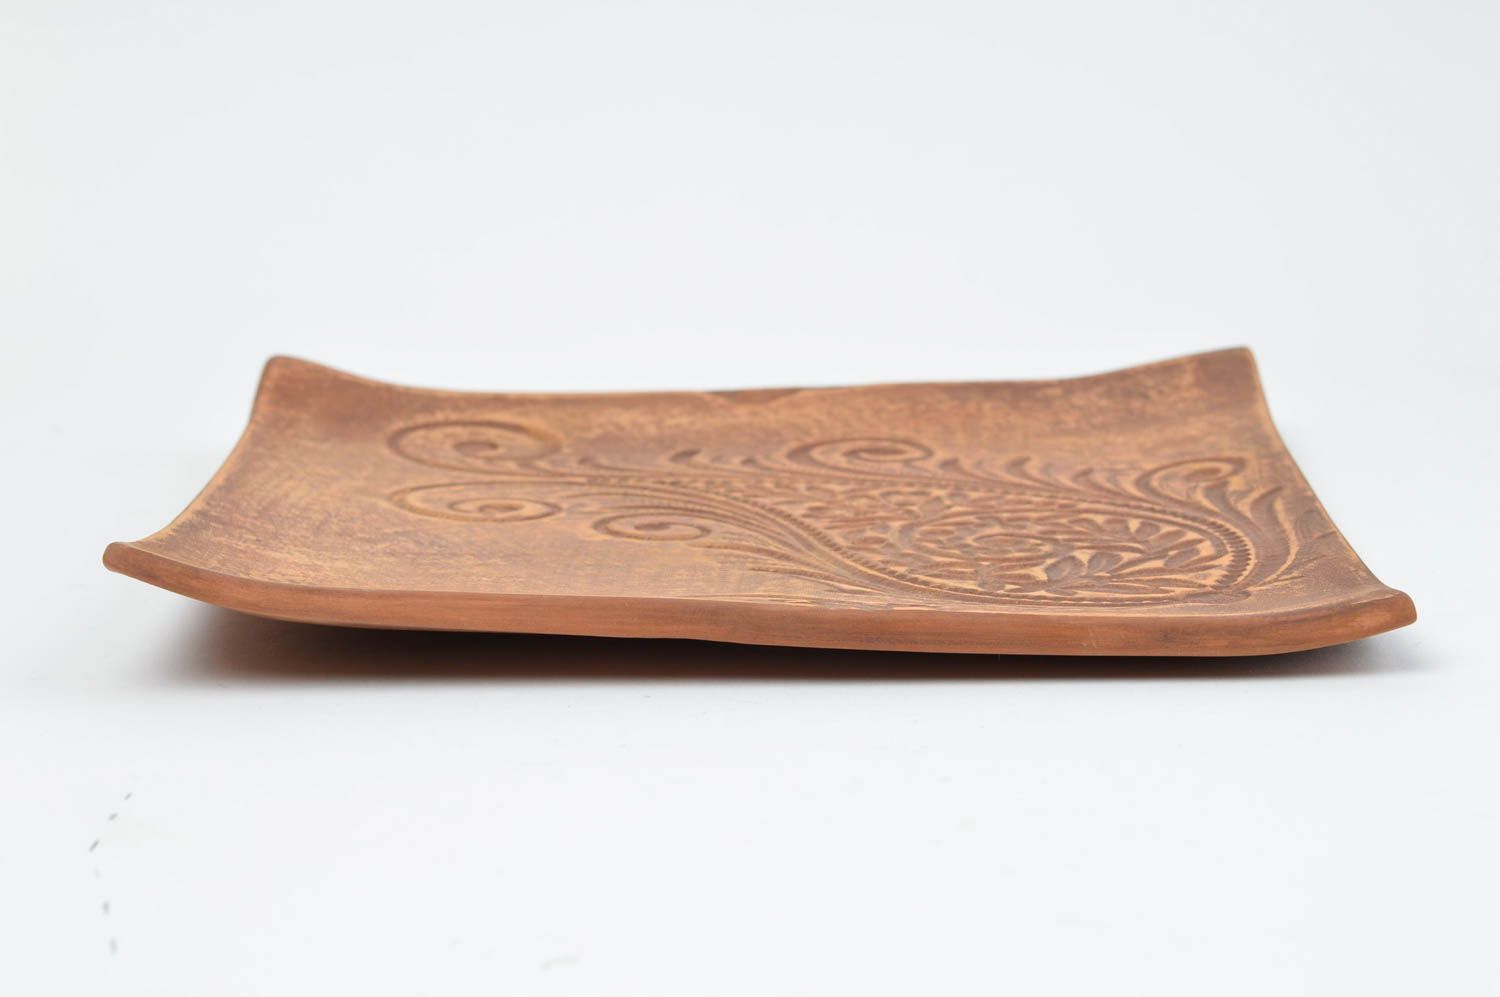 Handmade square plate designer ceramic kitchenware cute unusual utensils photo 3